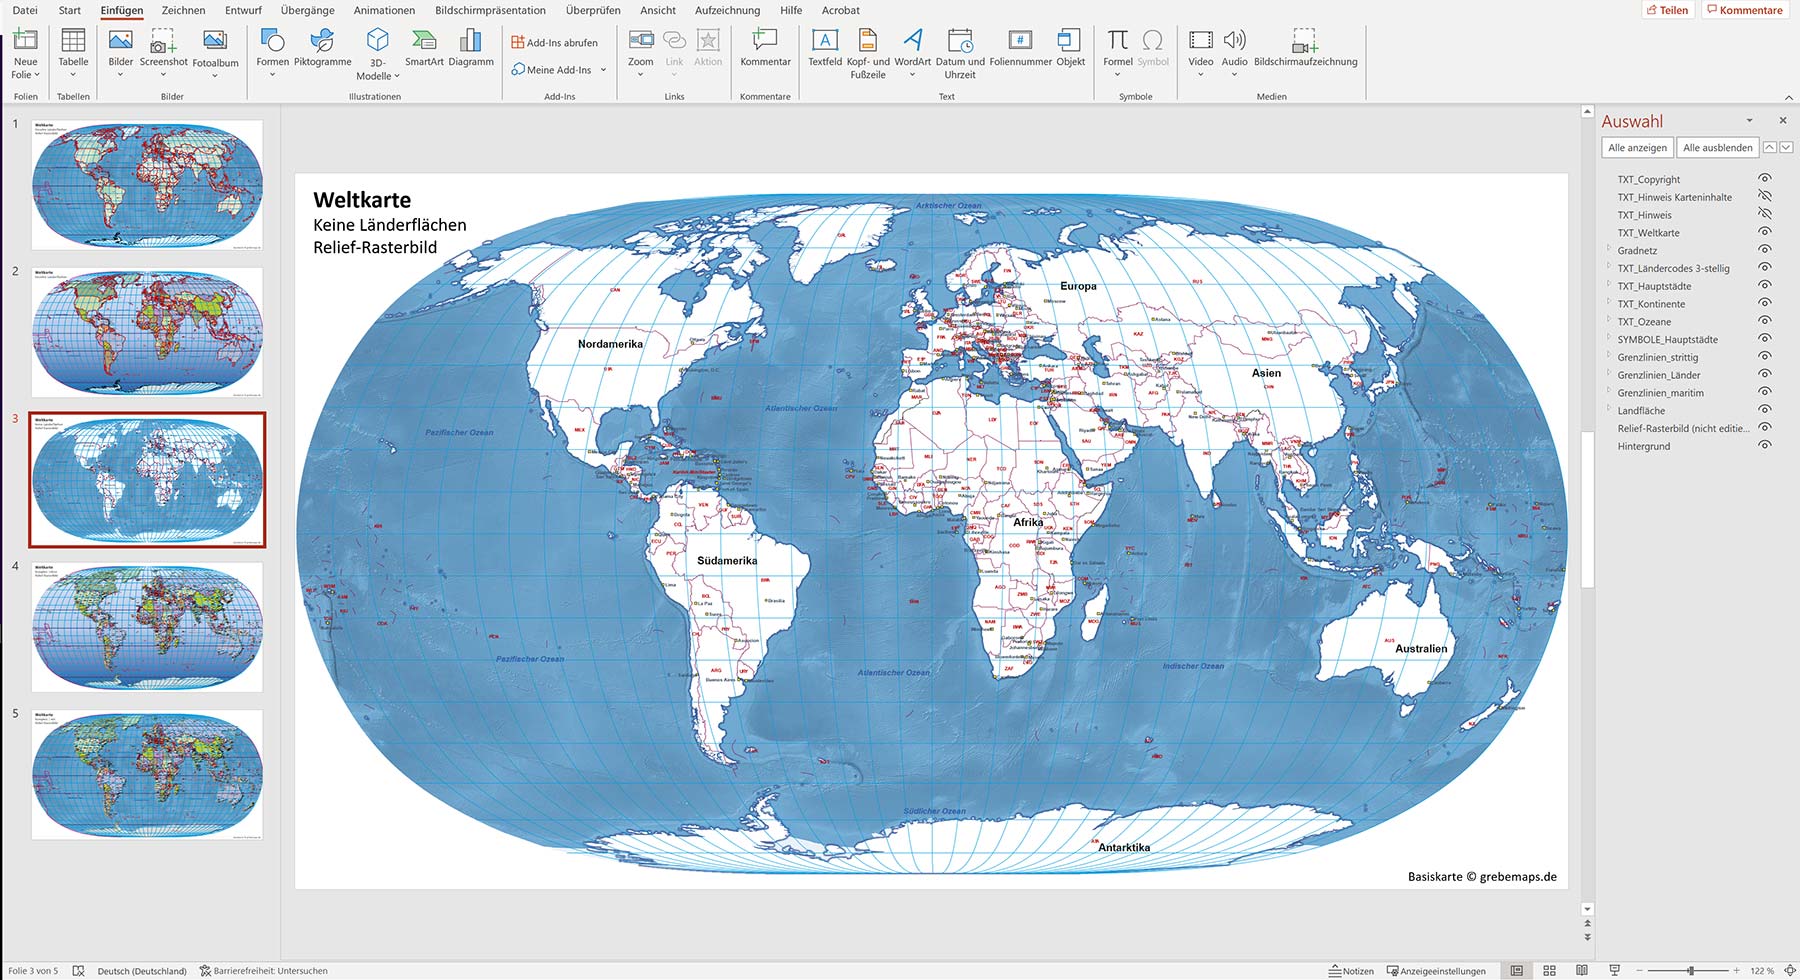 PowerPoint-Weltkarte politisch und physisch mit Ländern zum Einfärben zum Bearbeiten, Weltkarte powerpoint bearbeitbar, weltkarte powerpoint einfärbbar, weltkarte powerpoint physisch, weltkarte powerpoint politisch, editierbare powerpoint weltkarte, landkarte welt powerpoint